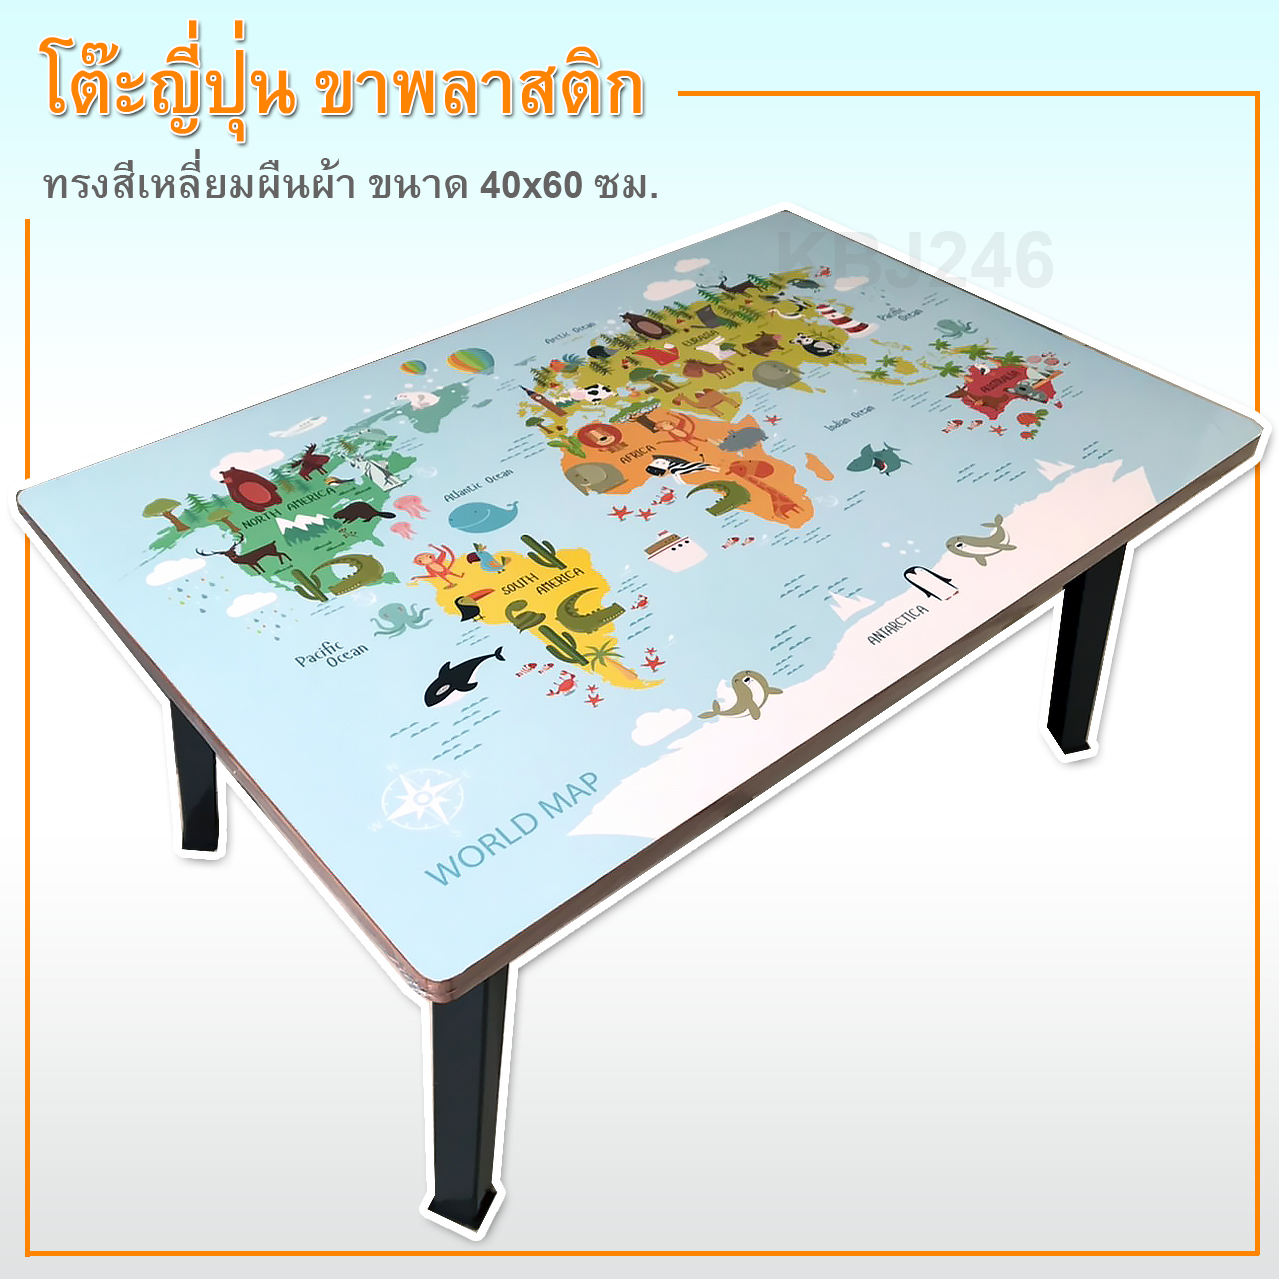 โต๊ะญี่ปุ่น โต๊ะพับอเนกประสงค์พรีเมี่ยม ขนาด 40x60ซม(16x24นิ้ว)